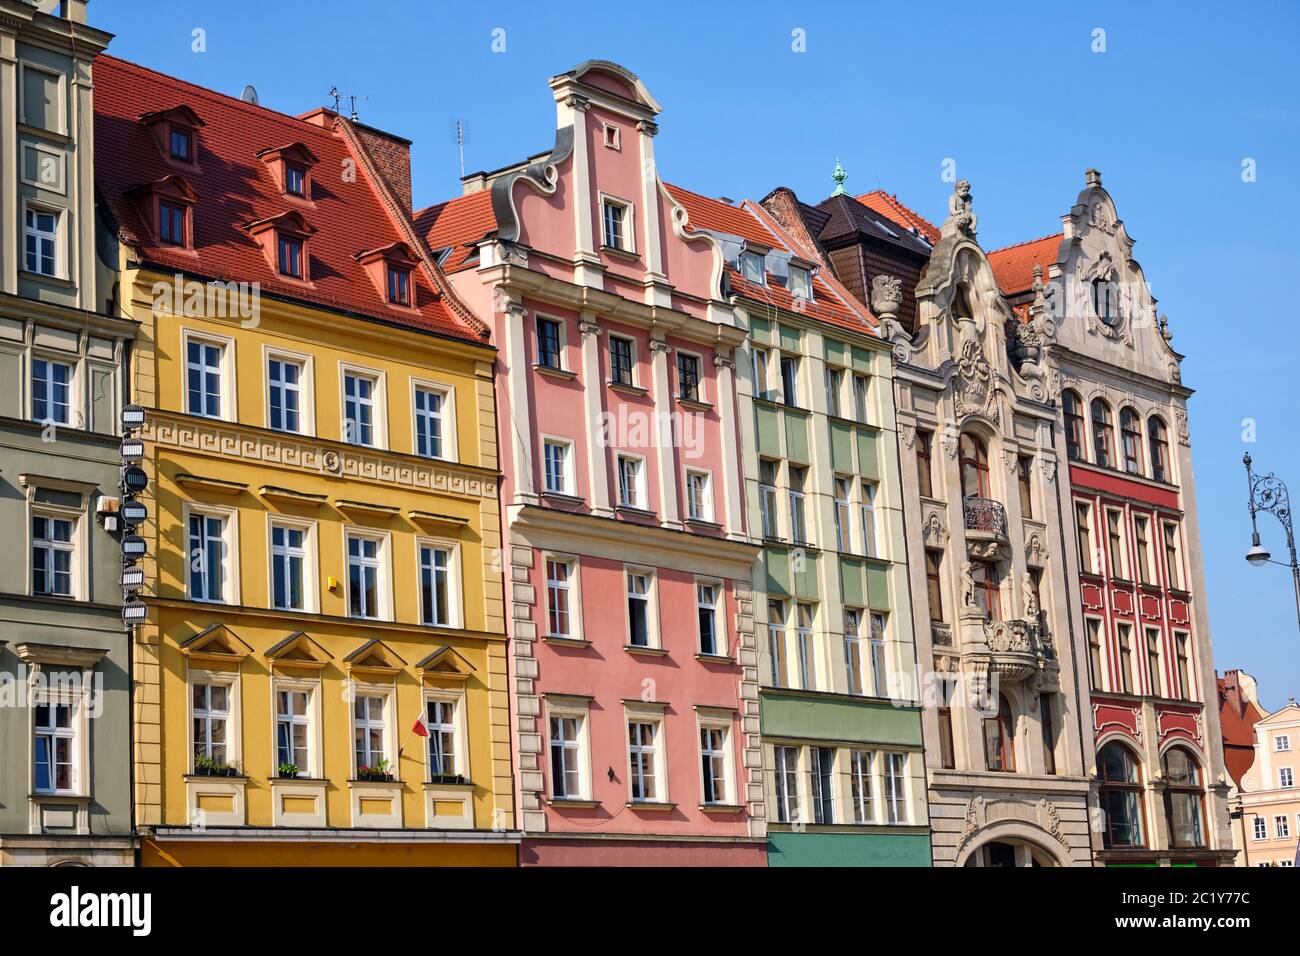 Maisons colorées à la place du marché de Wroclaw, Pologne Banque D'Images